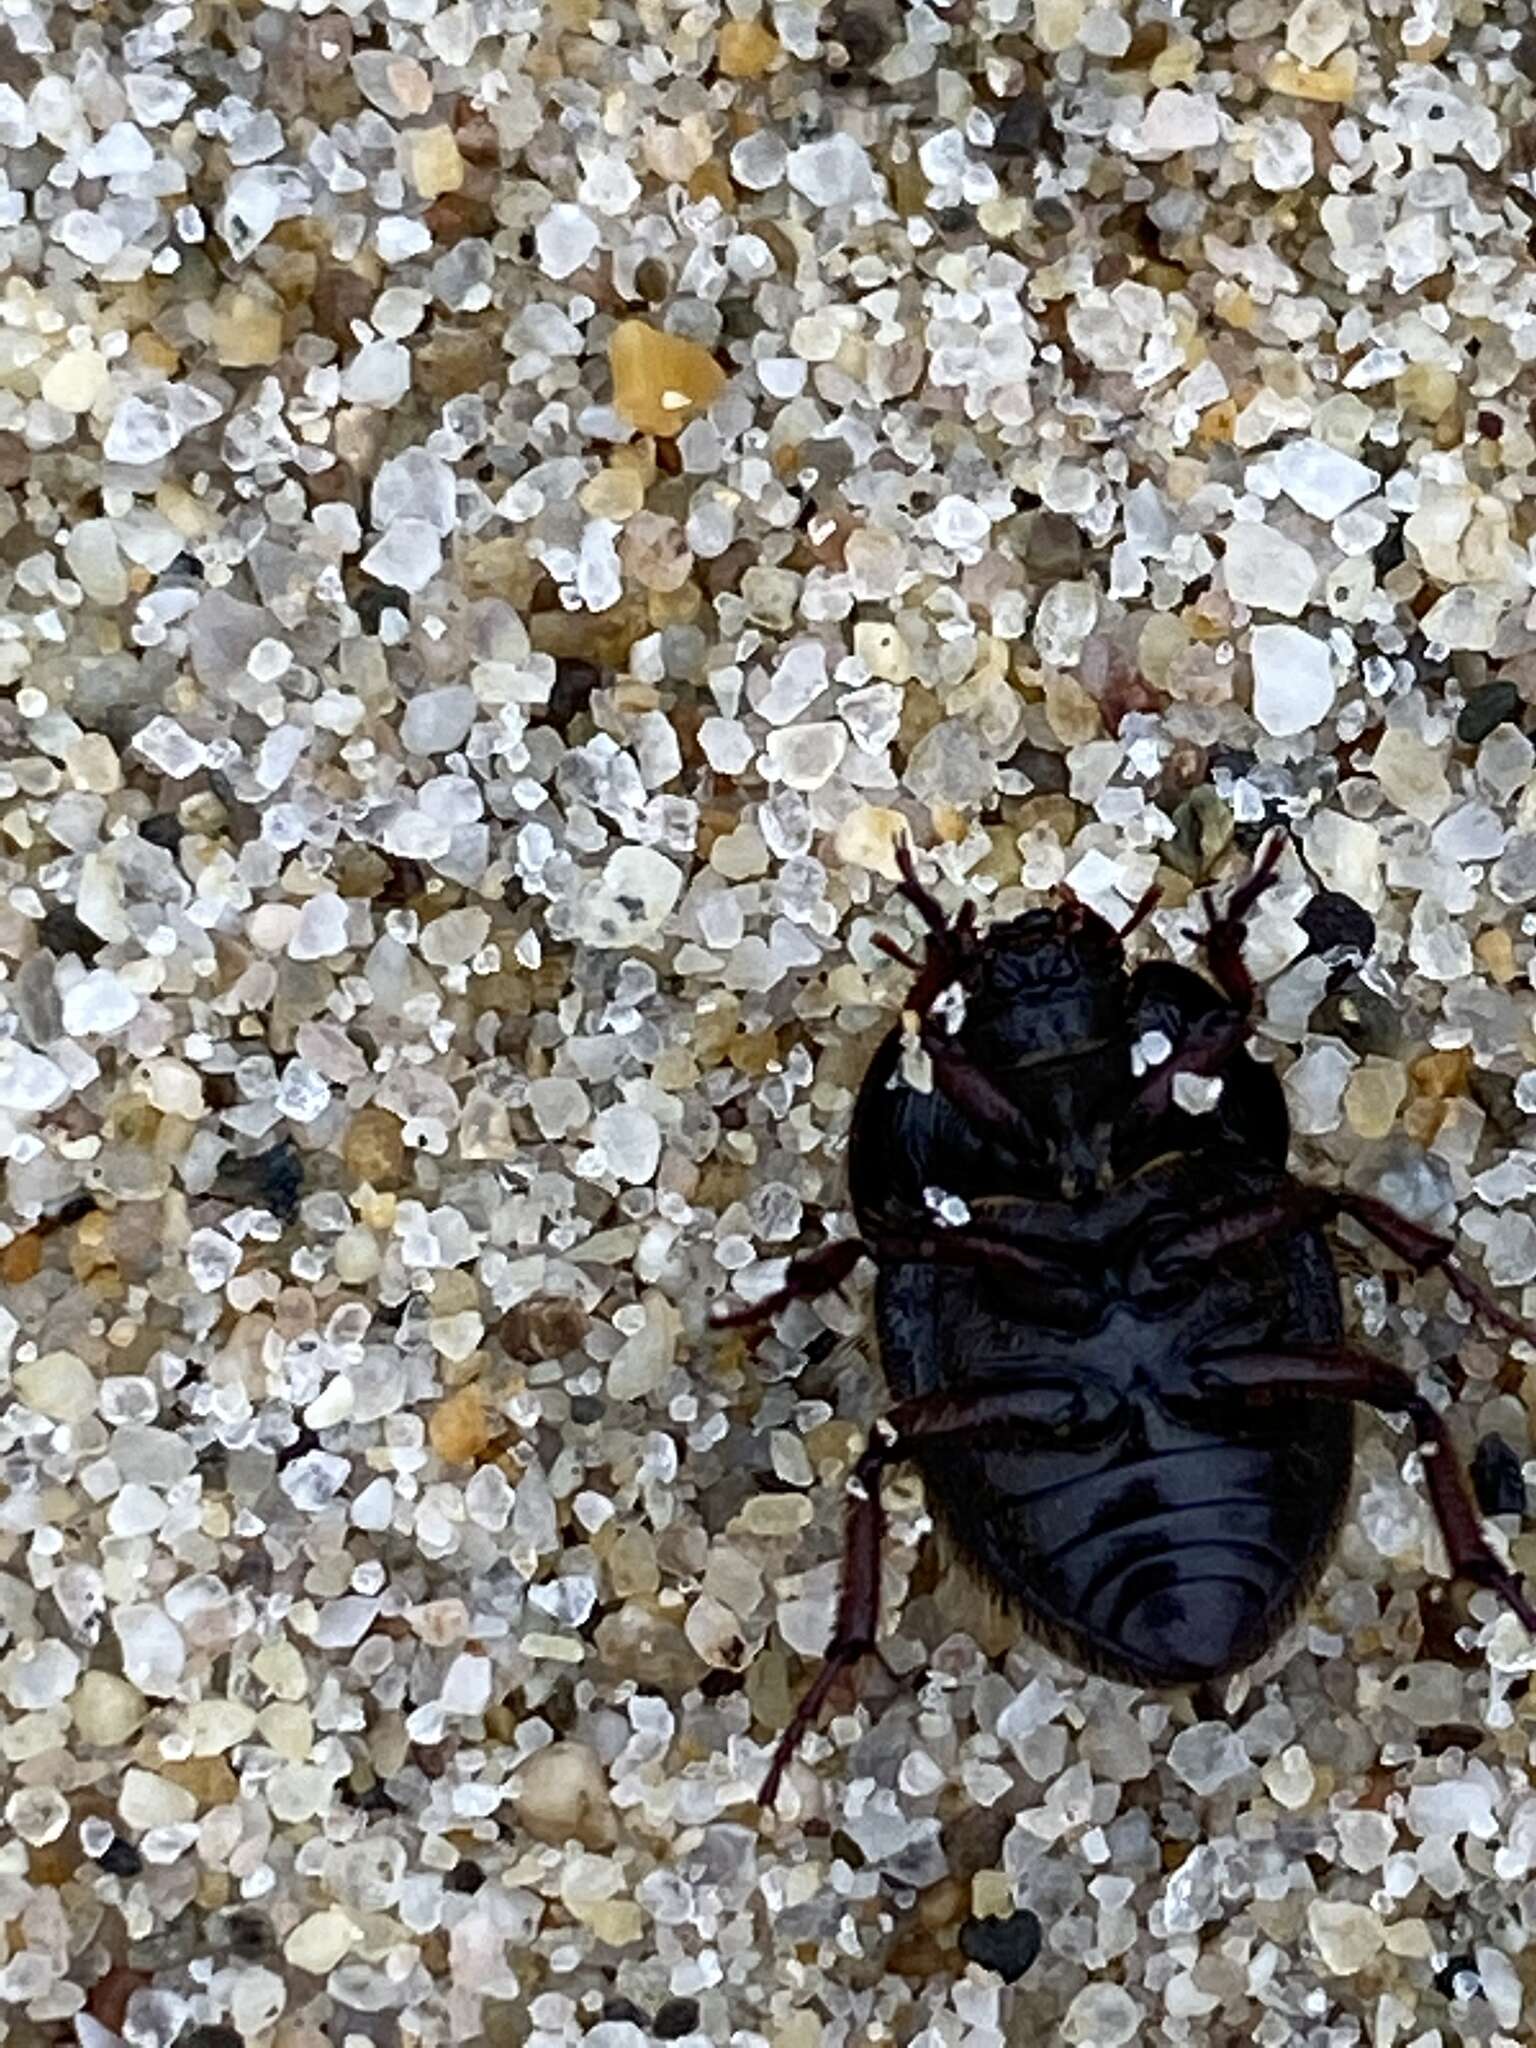 Image of Globose Dune Beetle